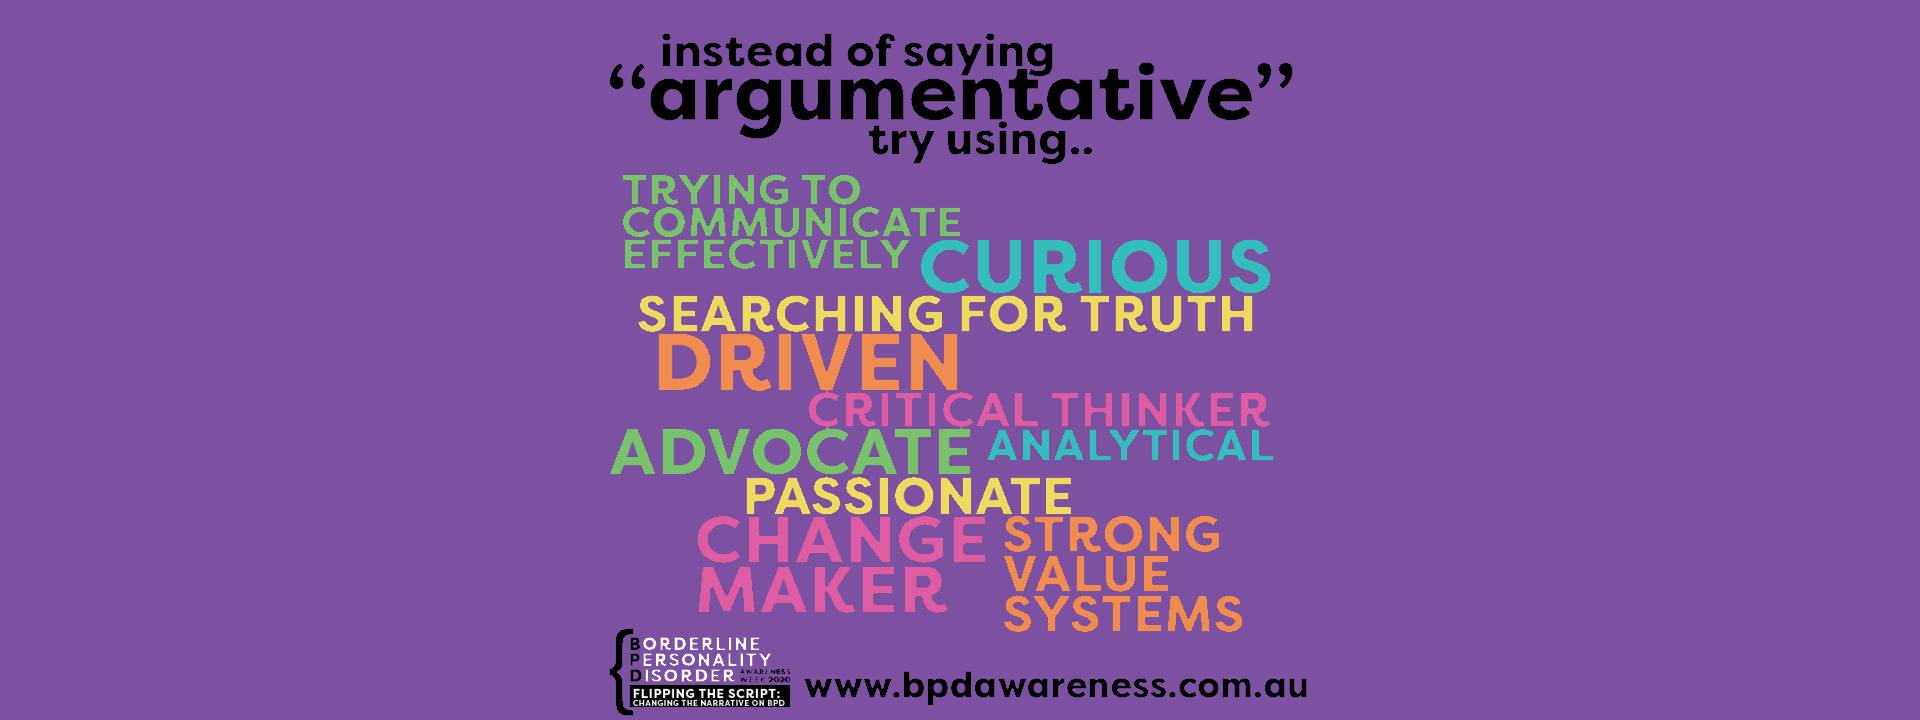 BPD Awareness Week - Not Argumentative